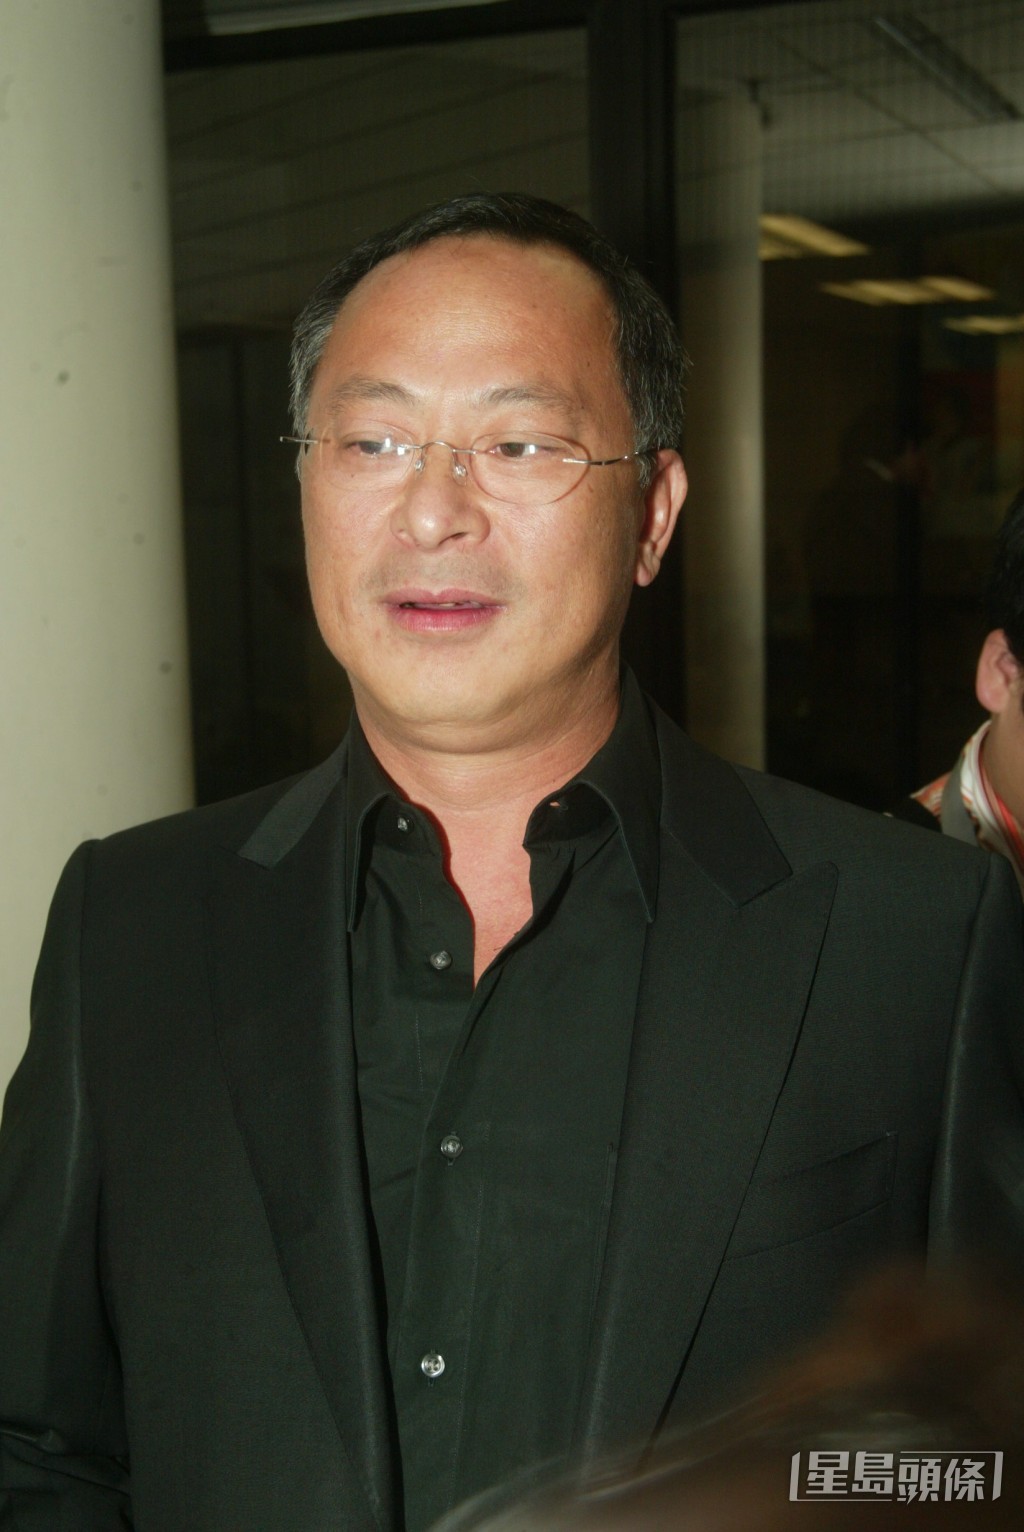 杜琪峯是香港电影殿堂级导演之一。